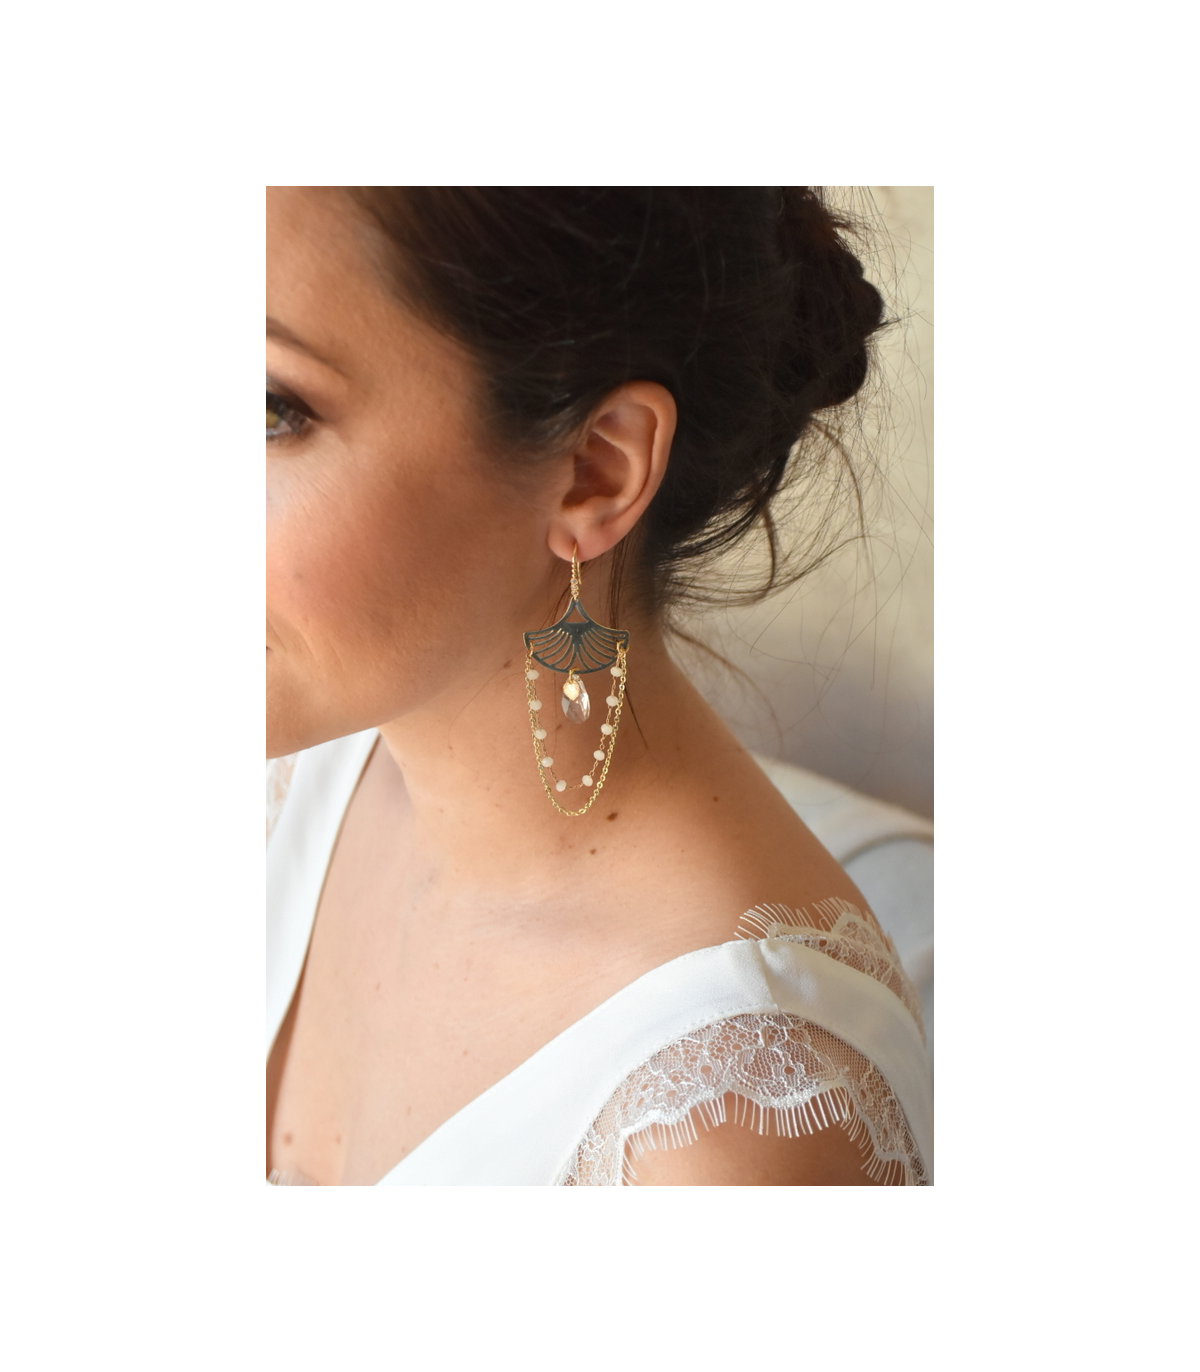 Boucles d'oreilles pour la mariée modèle Osiris avec cristaux et goutte Swarovski, et une fine chaine plaqué or.